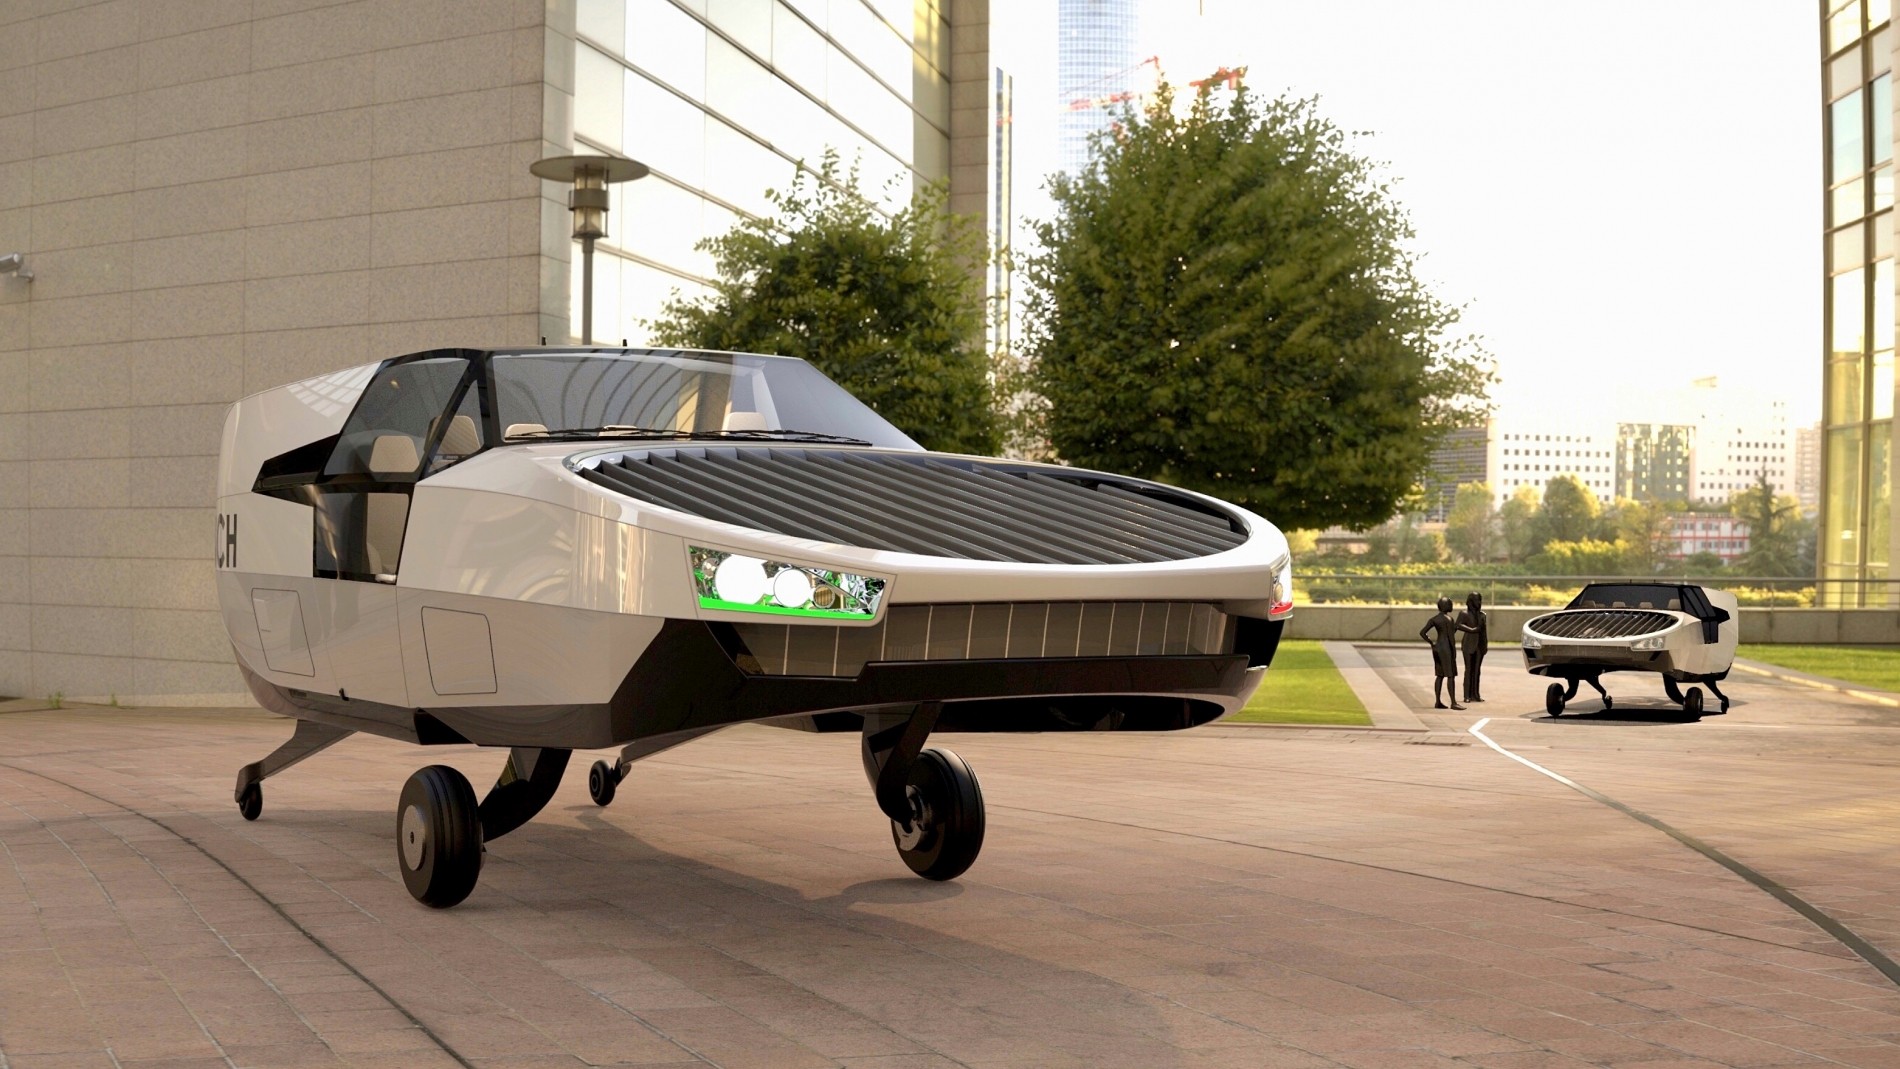 Полетим на водороде: аэрокар CityHawk размером с крупный SUV возьмёт на борт шестерых CityHawk, будет, машины, Urban, Aeronautics, перед, масса, имеет, полёта, Йоэли, можно, компания, разработкой, грузоподъёмность, вместо, долгой, зарядки, Вместимость, пилот, пассажиров